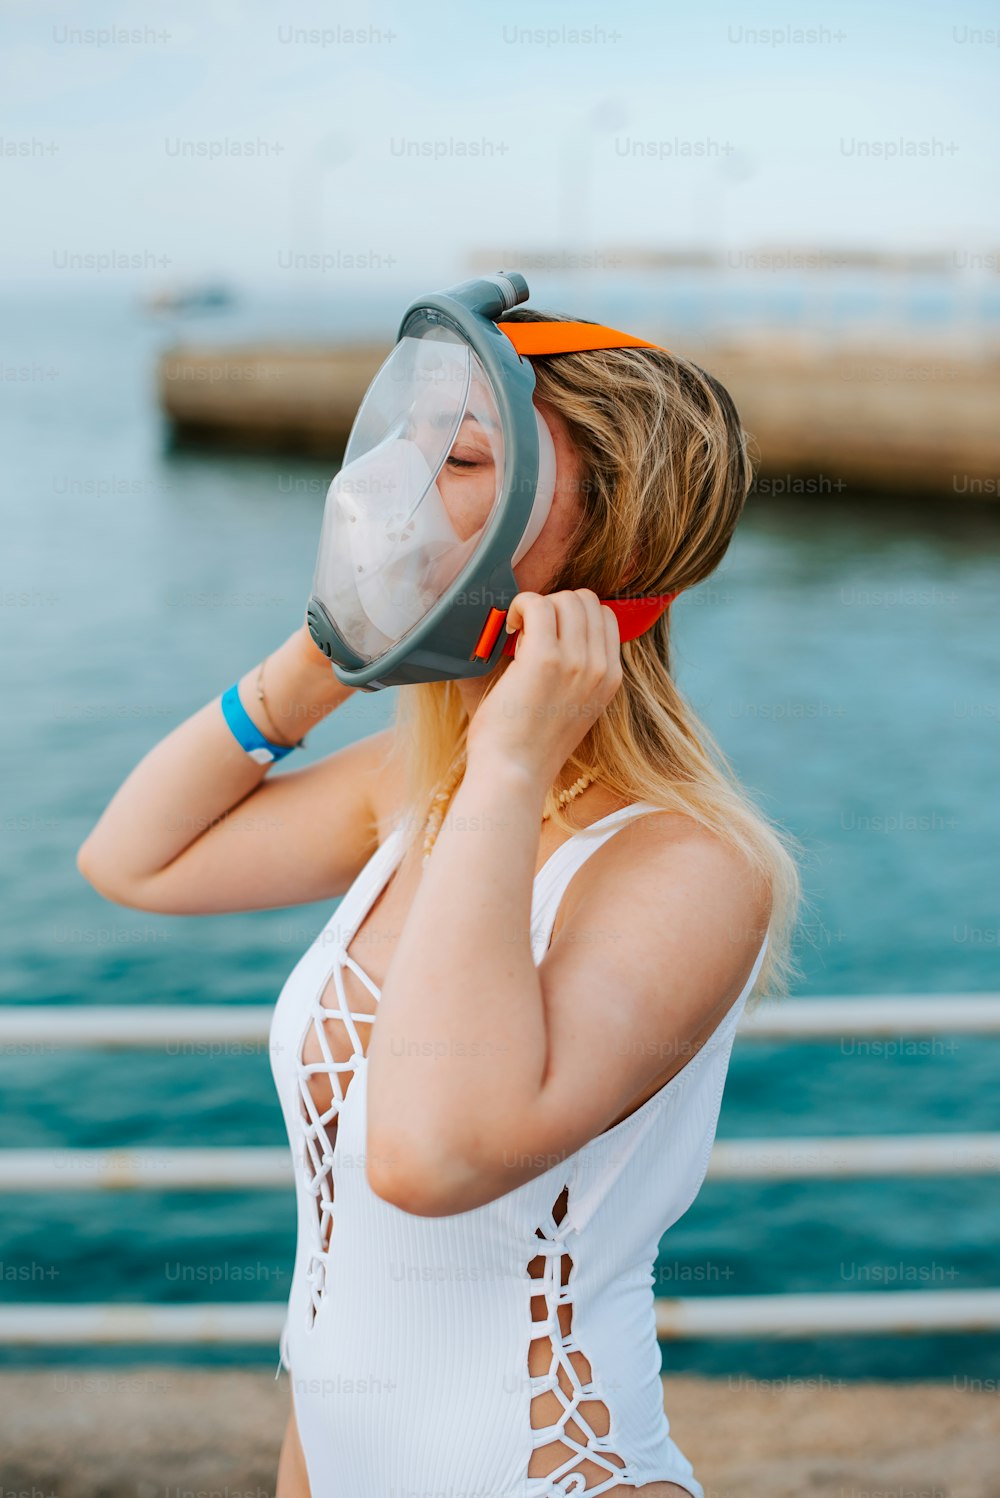 Une femme en maillot de bain blanc tenant un masque sur son visage